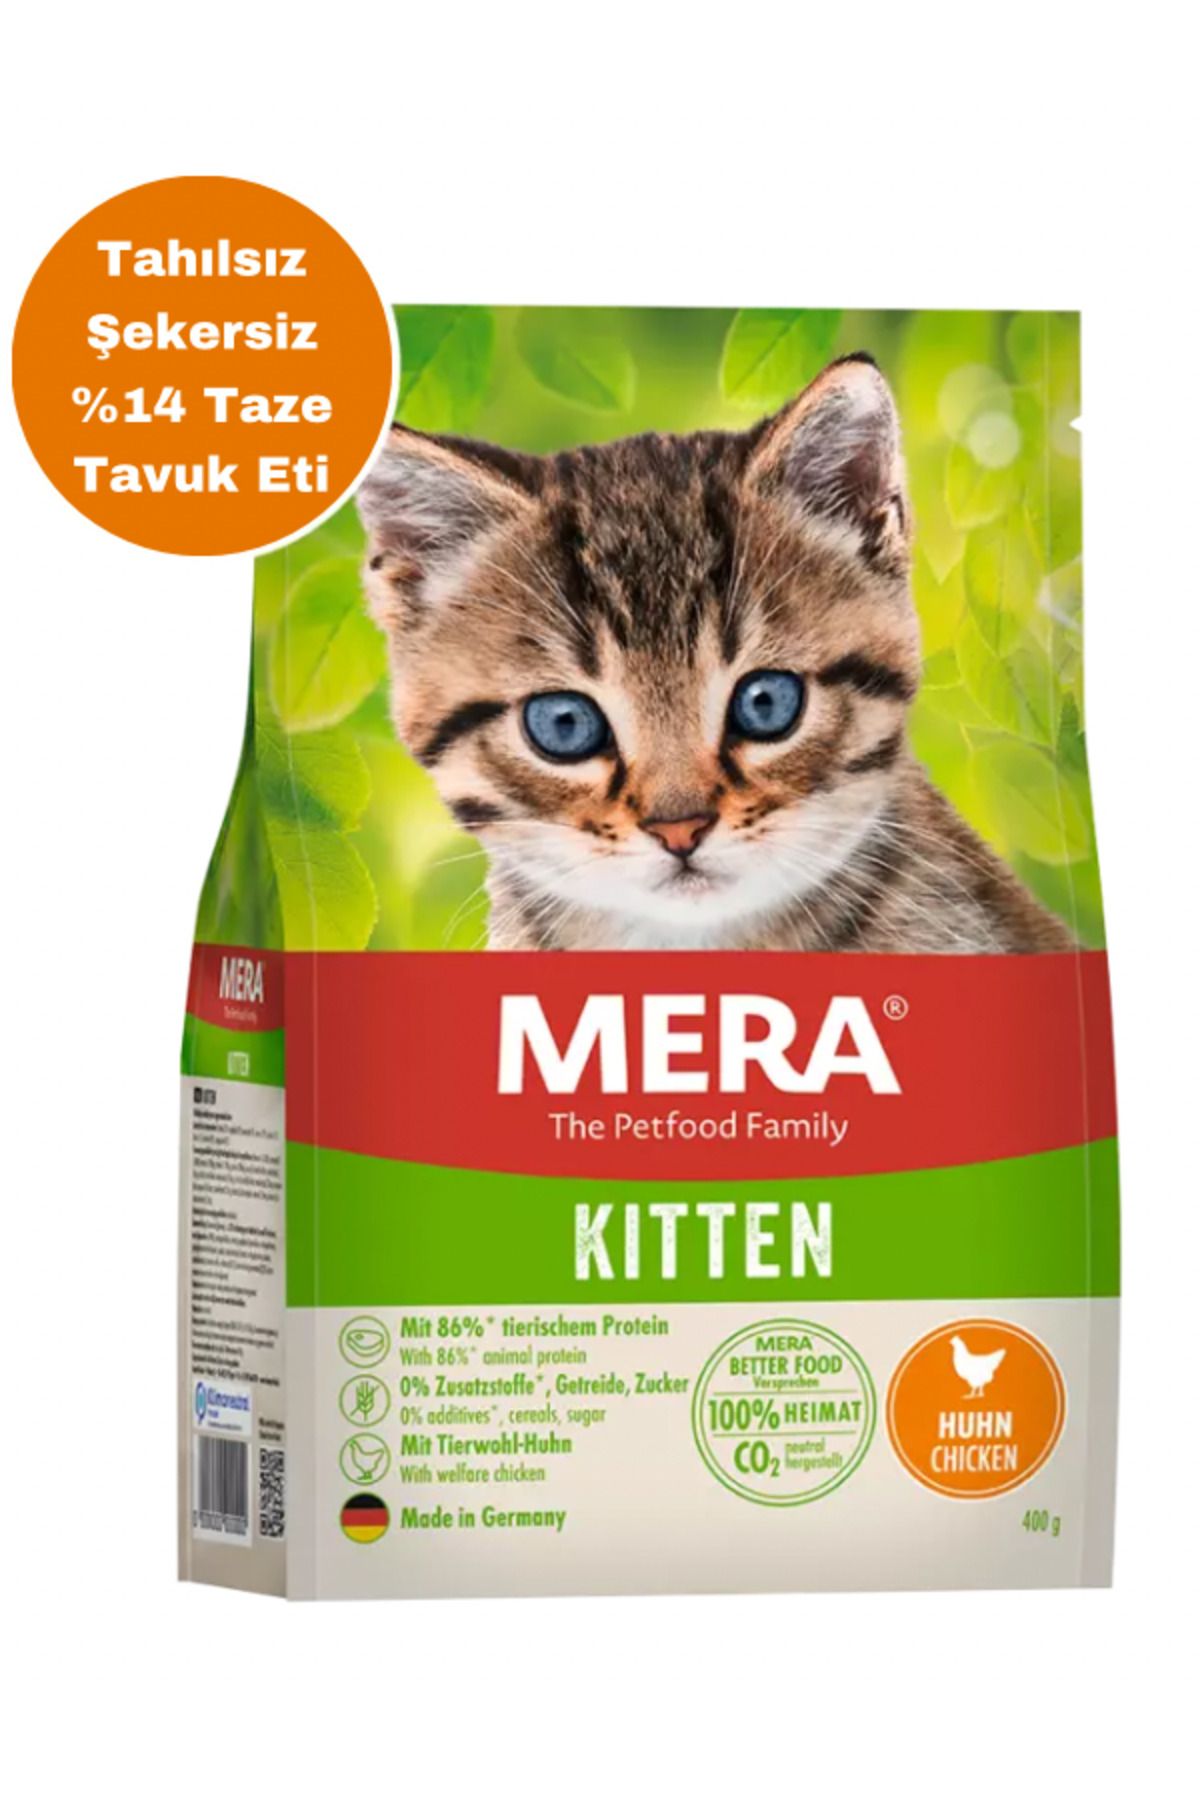 Mera Grain Free Kitten Chicken Cat Food Tahılsız Taze Tavuk Etli Yavru Kedi Maması 10 Kg